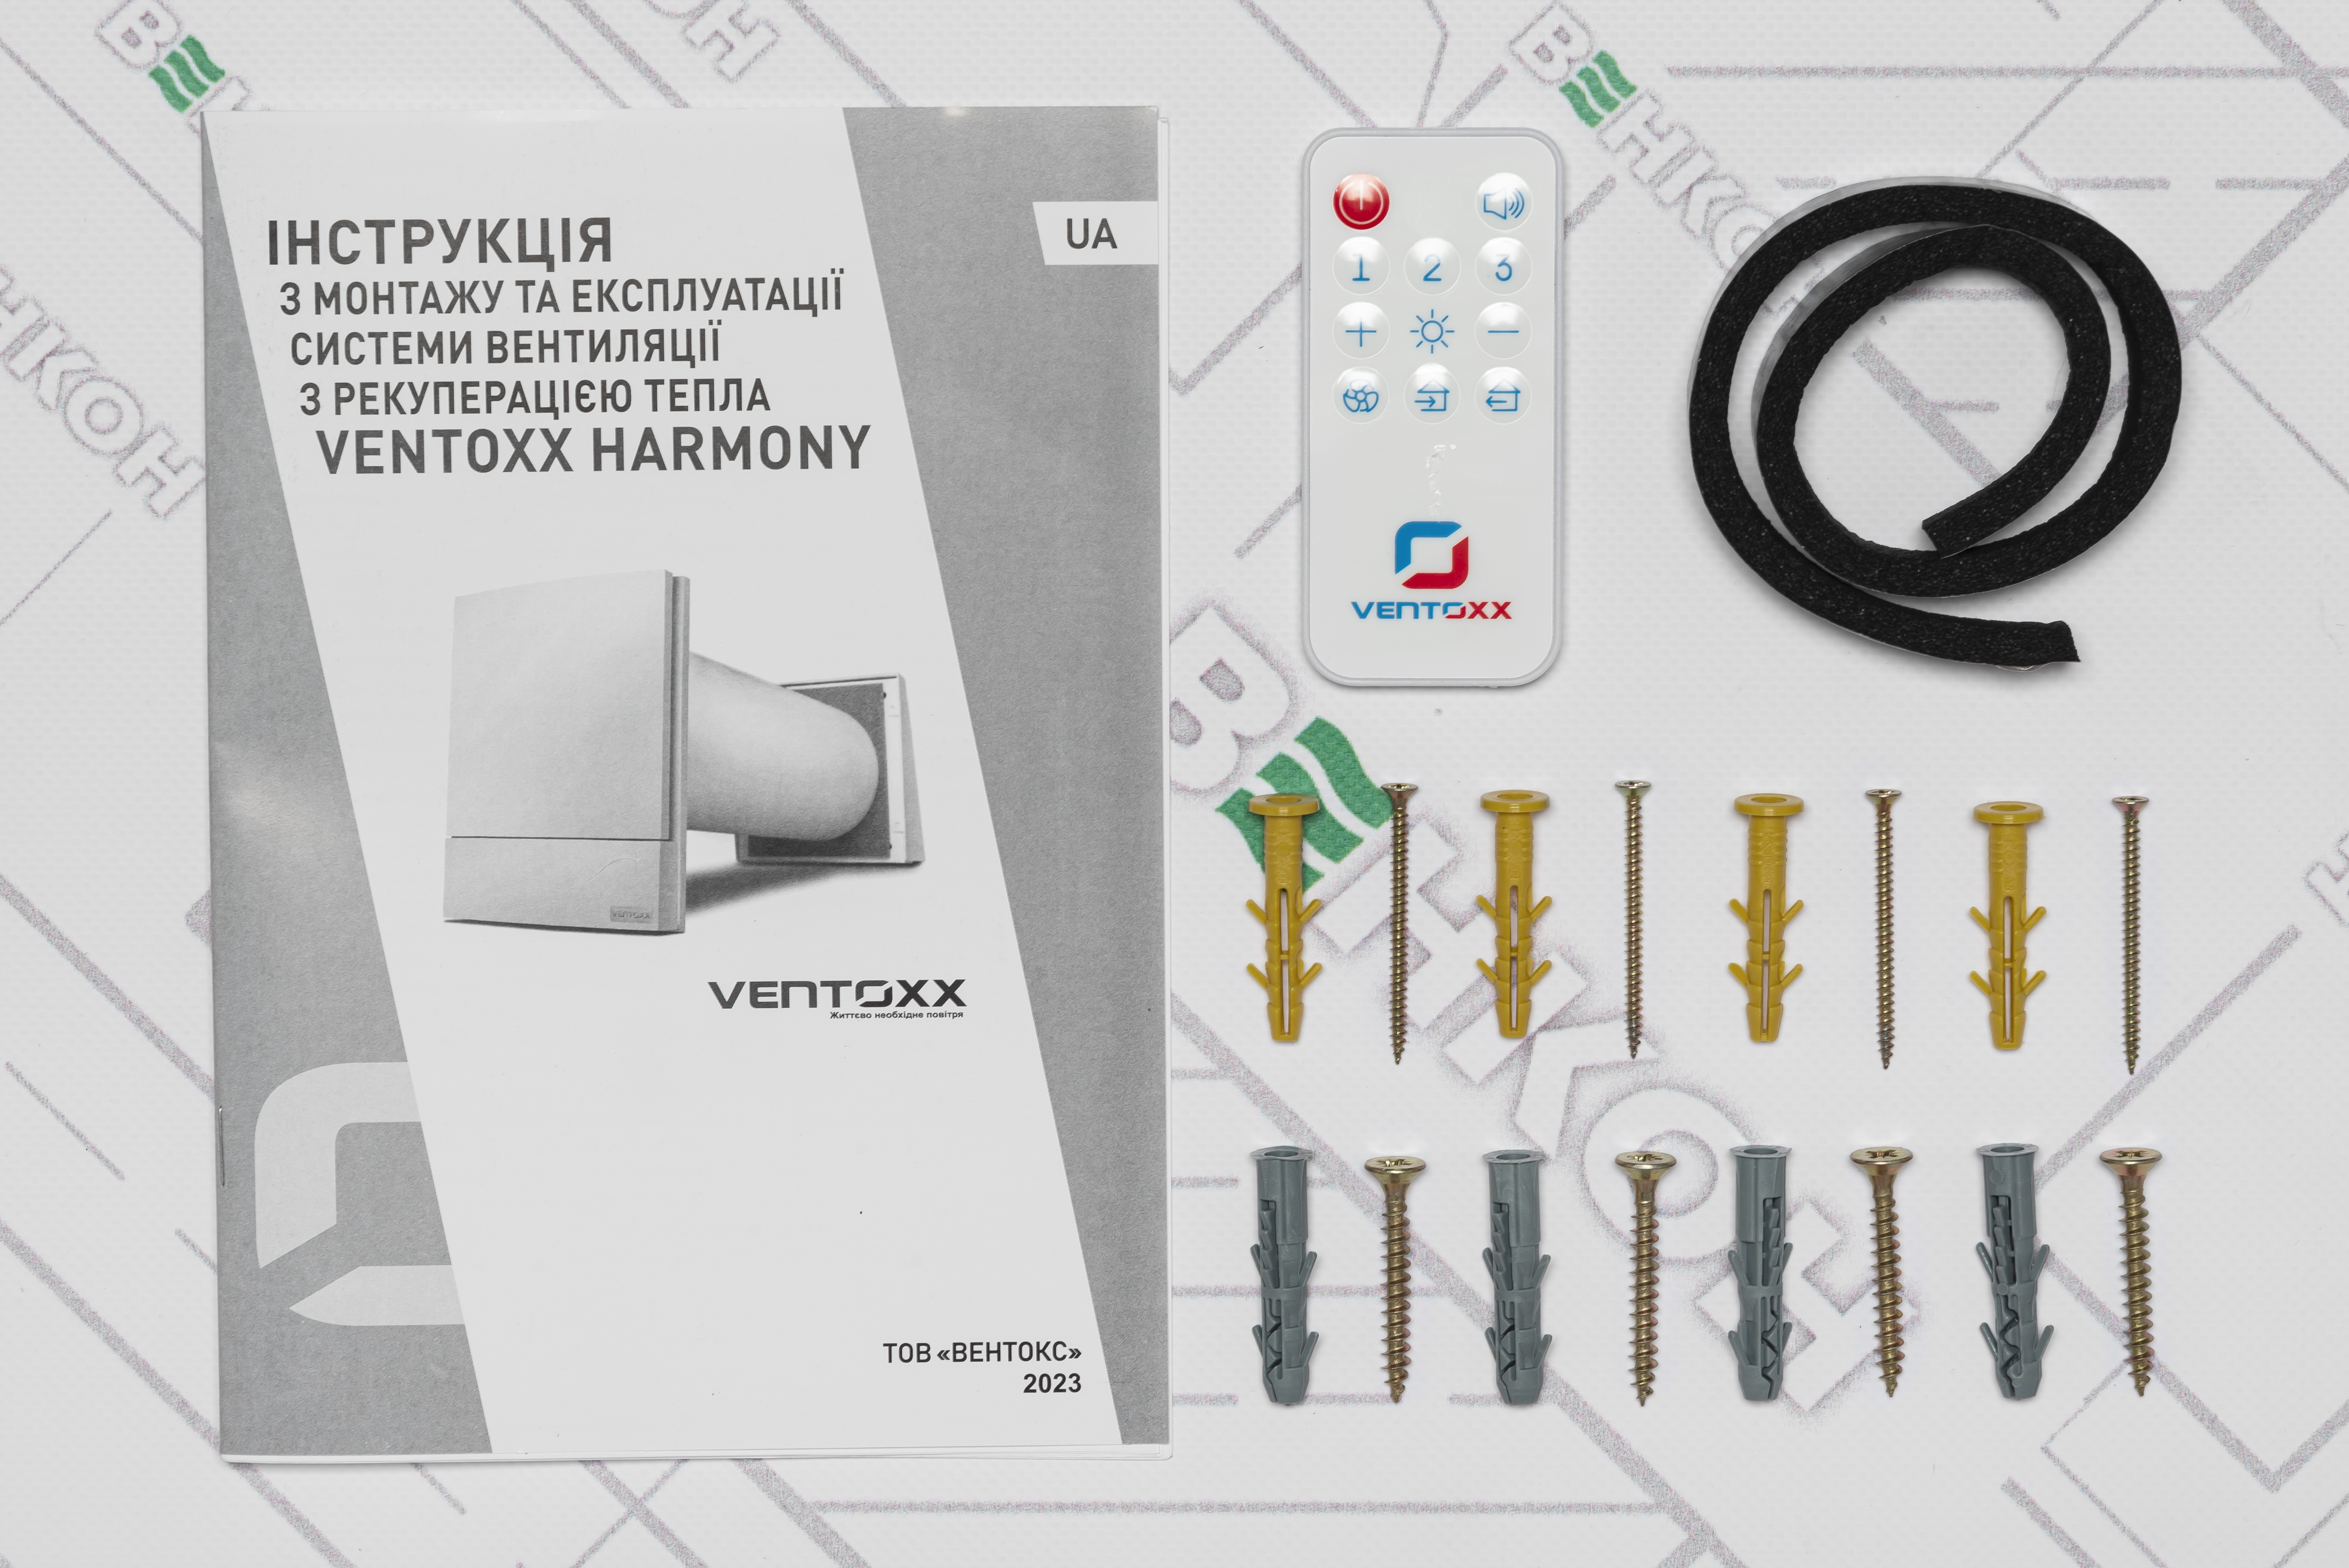 товар Ventoxx Harmony с пультом ДУ с металлической внешней крышкой 0,5 m - фото 13